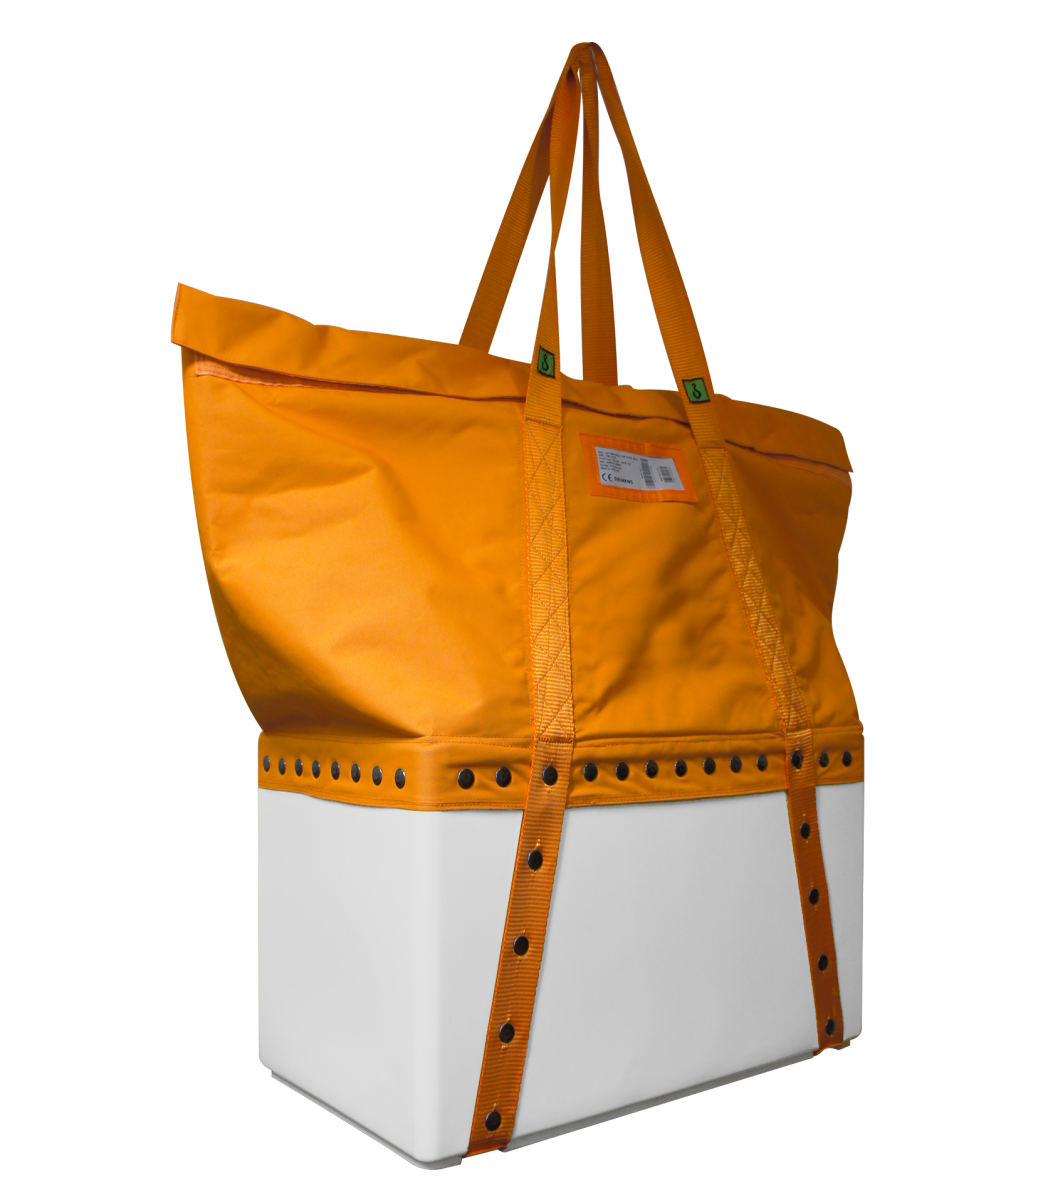 EMG Solid casted lifting bag - Large